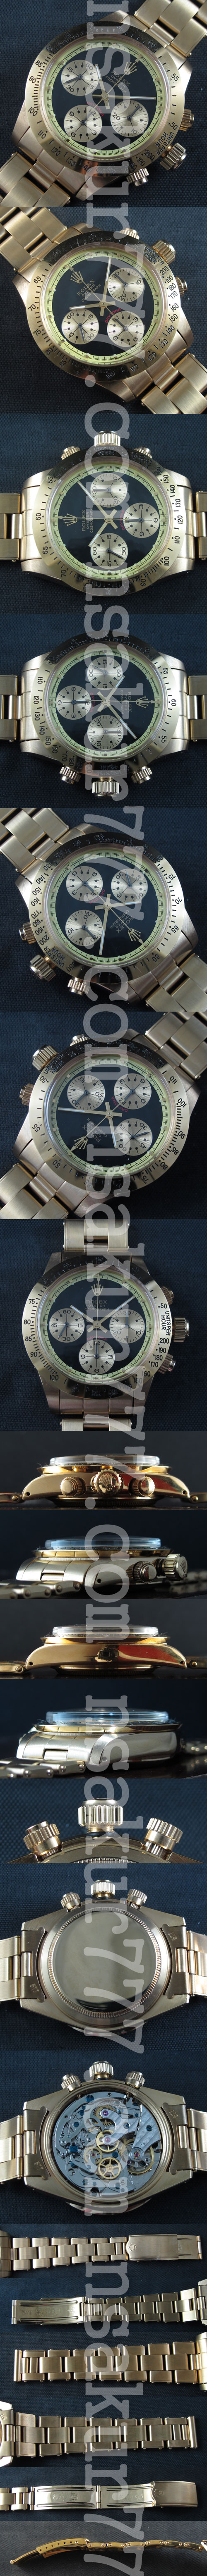 レプリカ時計ロレックスデイトナ， Asain 21600振動 ムーブ搭載(手巻き) - ウインドウを閉じる